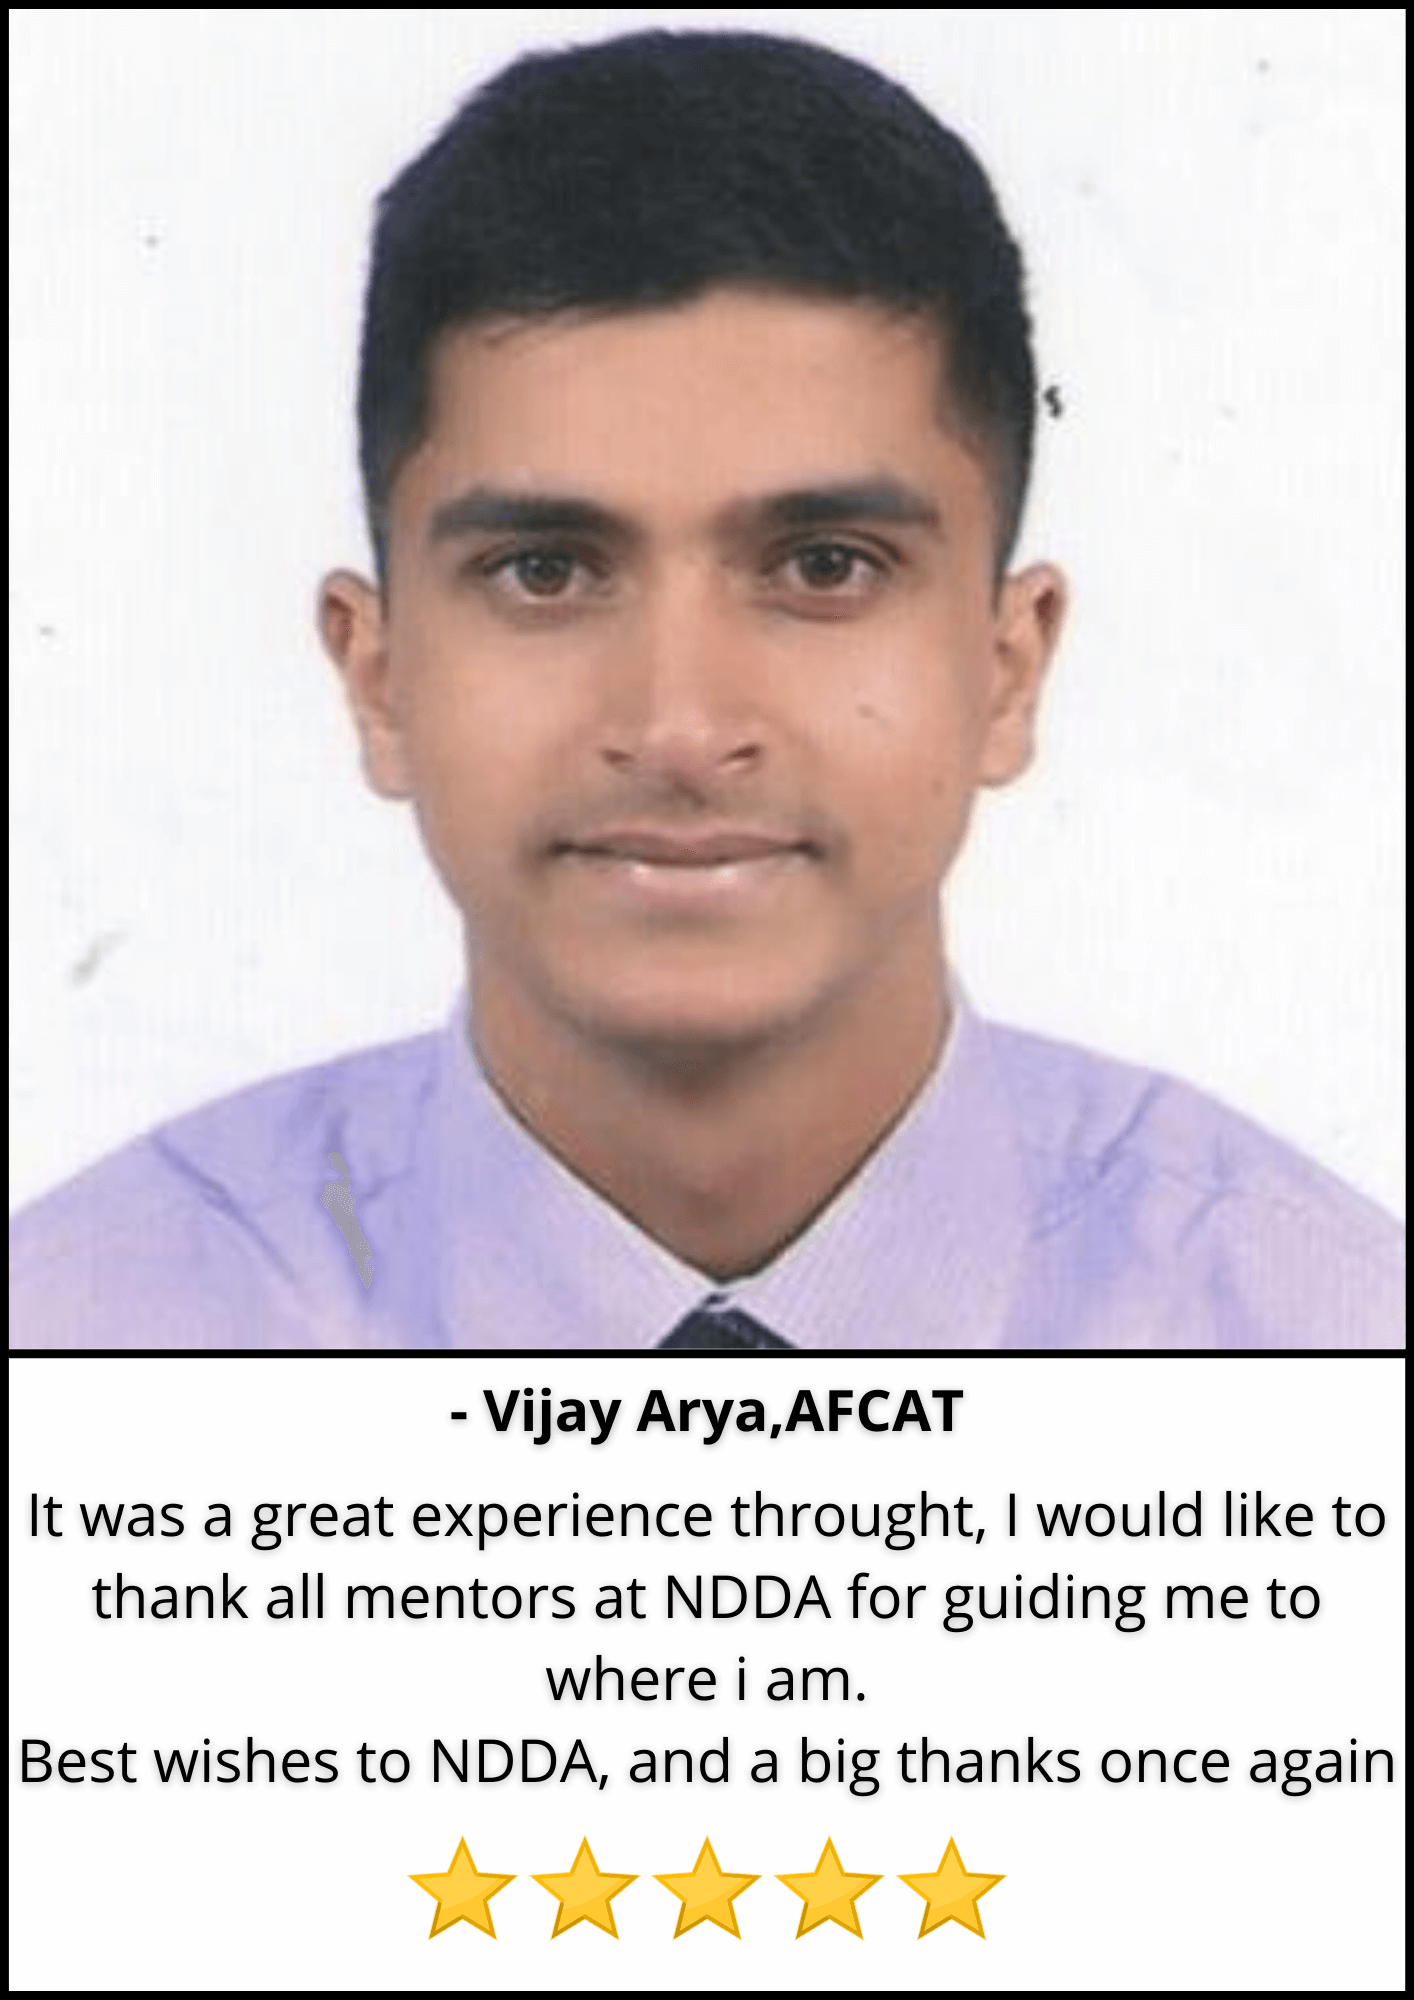 Vijay Arya, AFCAT